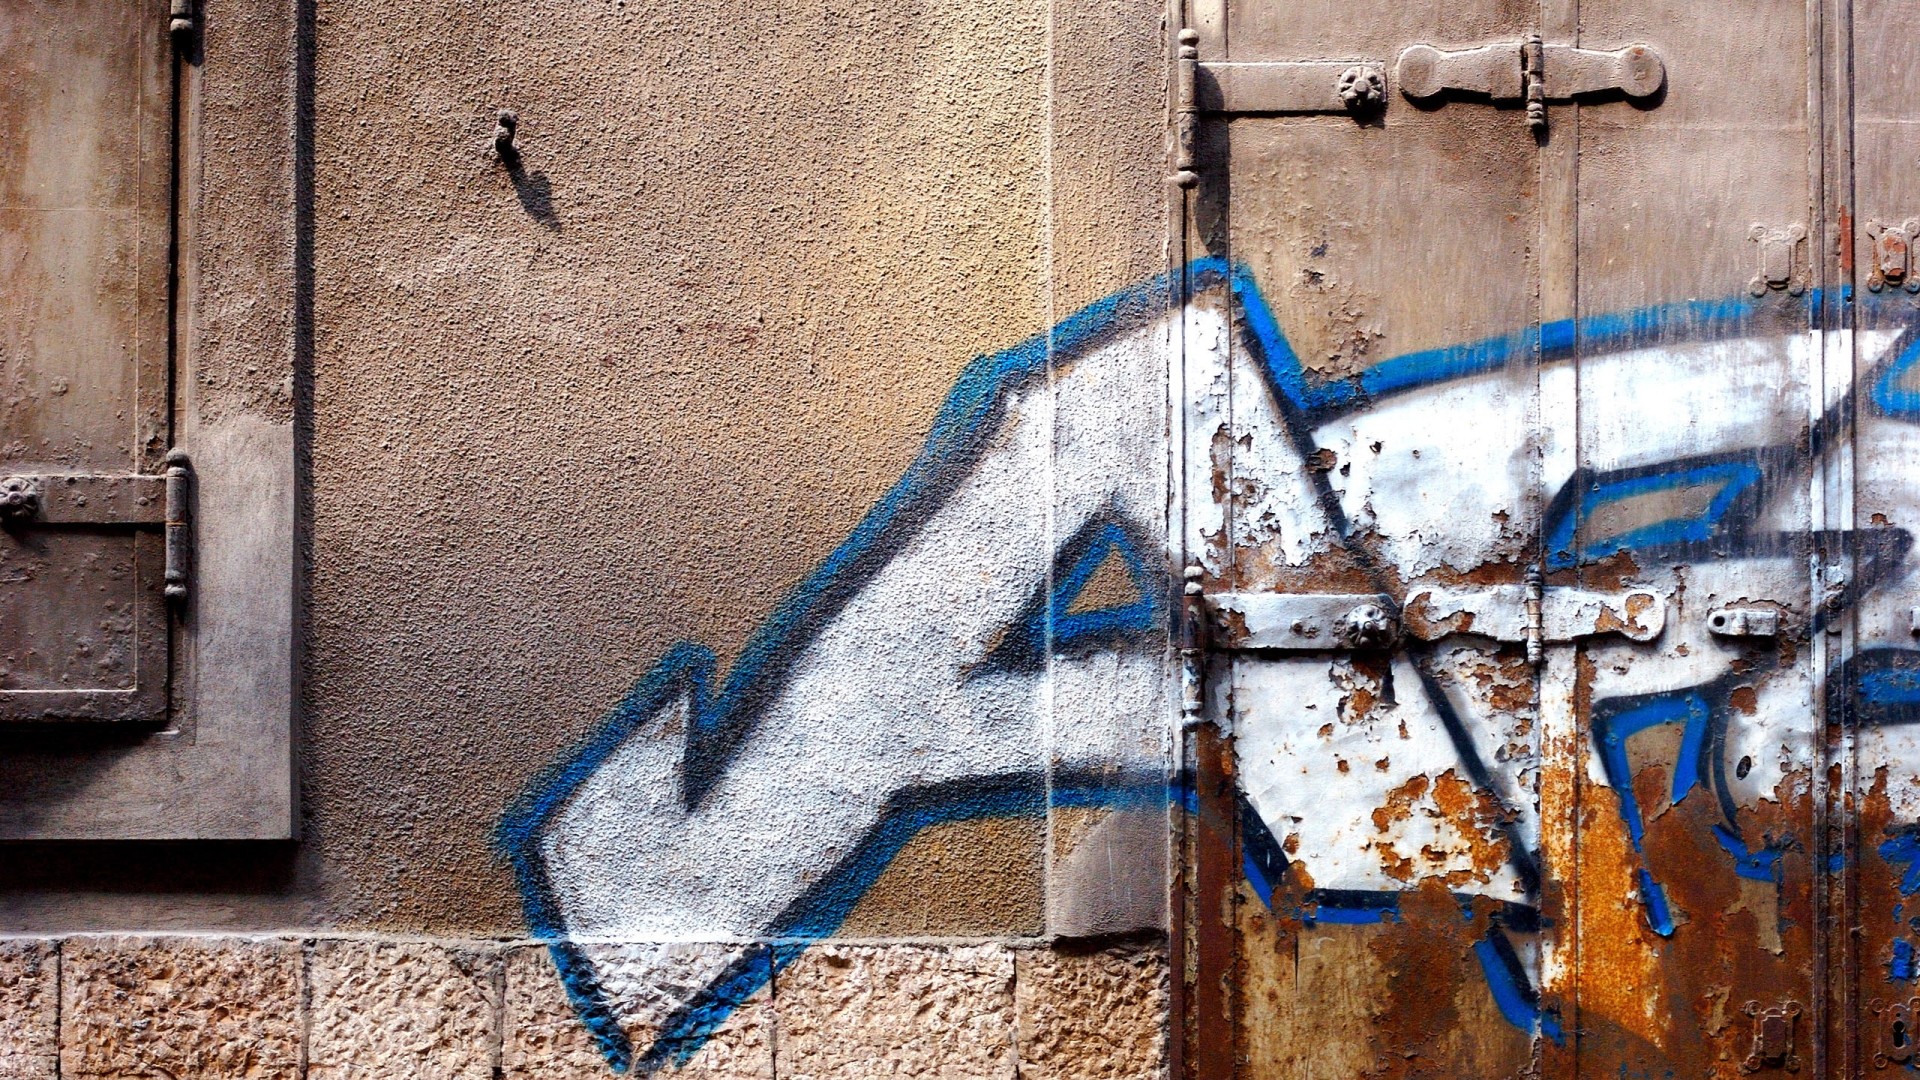 General 1920x1080 graffiti wall texture urban rust